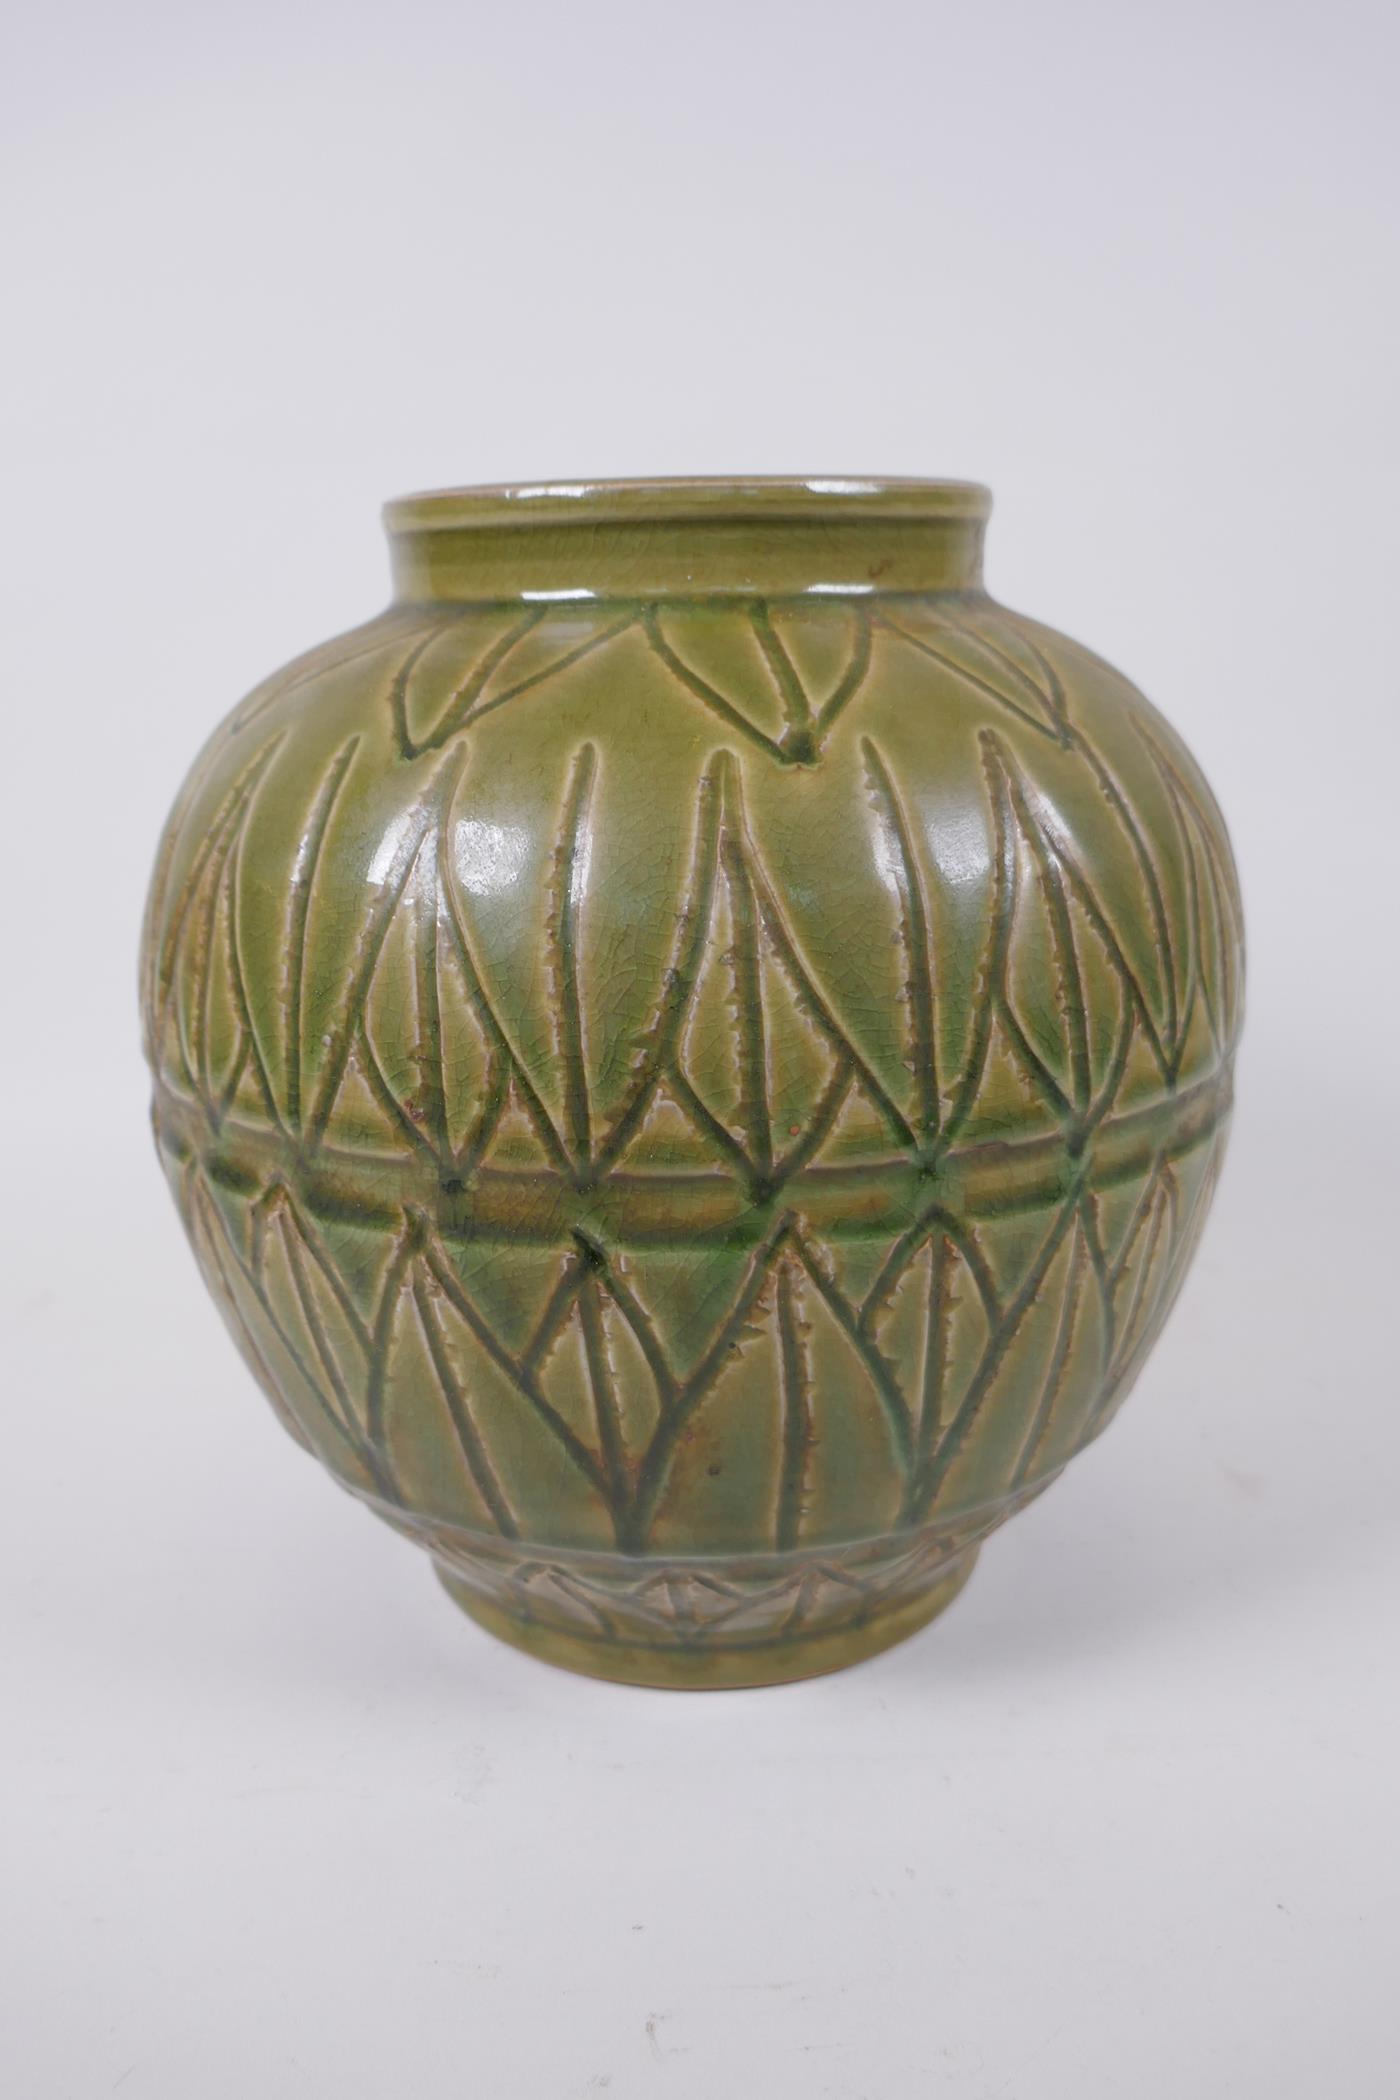 An oriental olive glazed porcelain jar with incised lotus leaf decoration, 23cm high